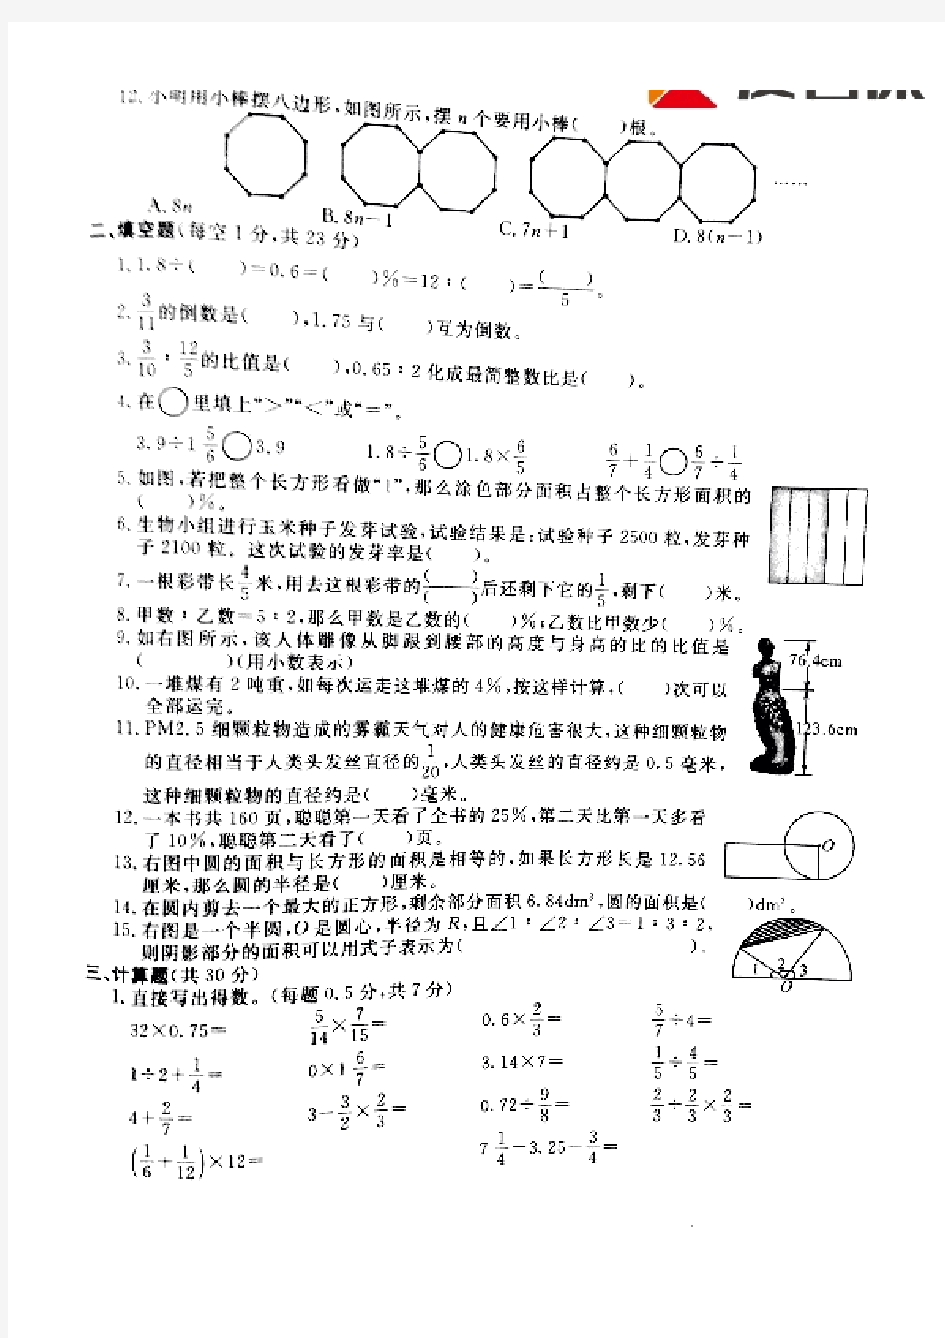 2016-2017学年杭州市西湖区上学期六年级数学统考卷